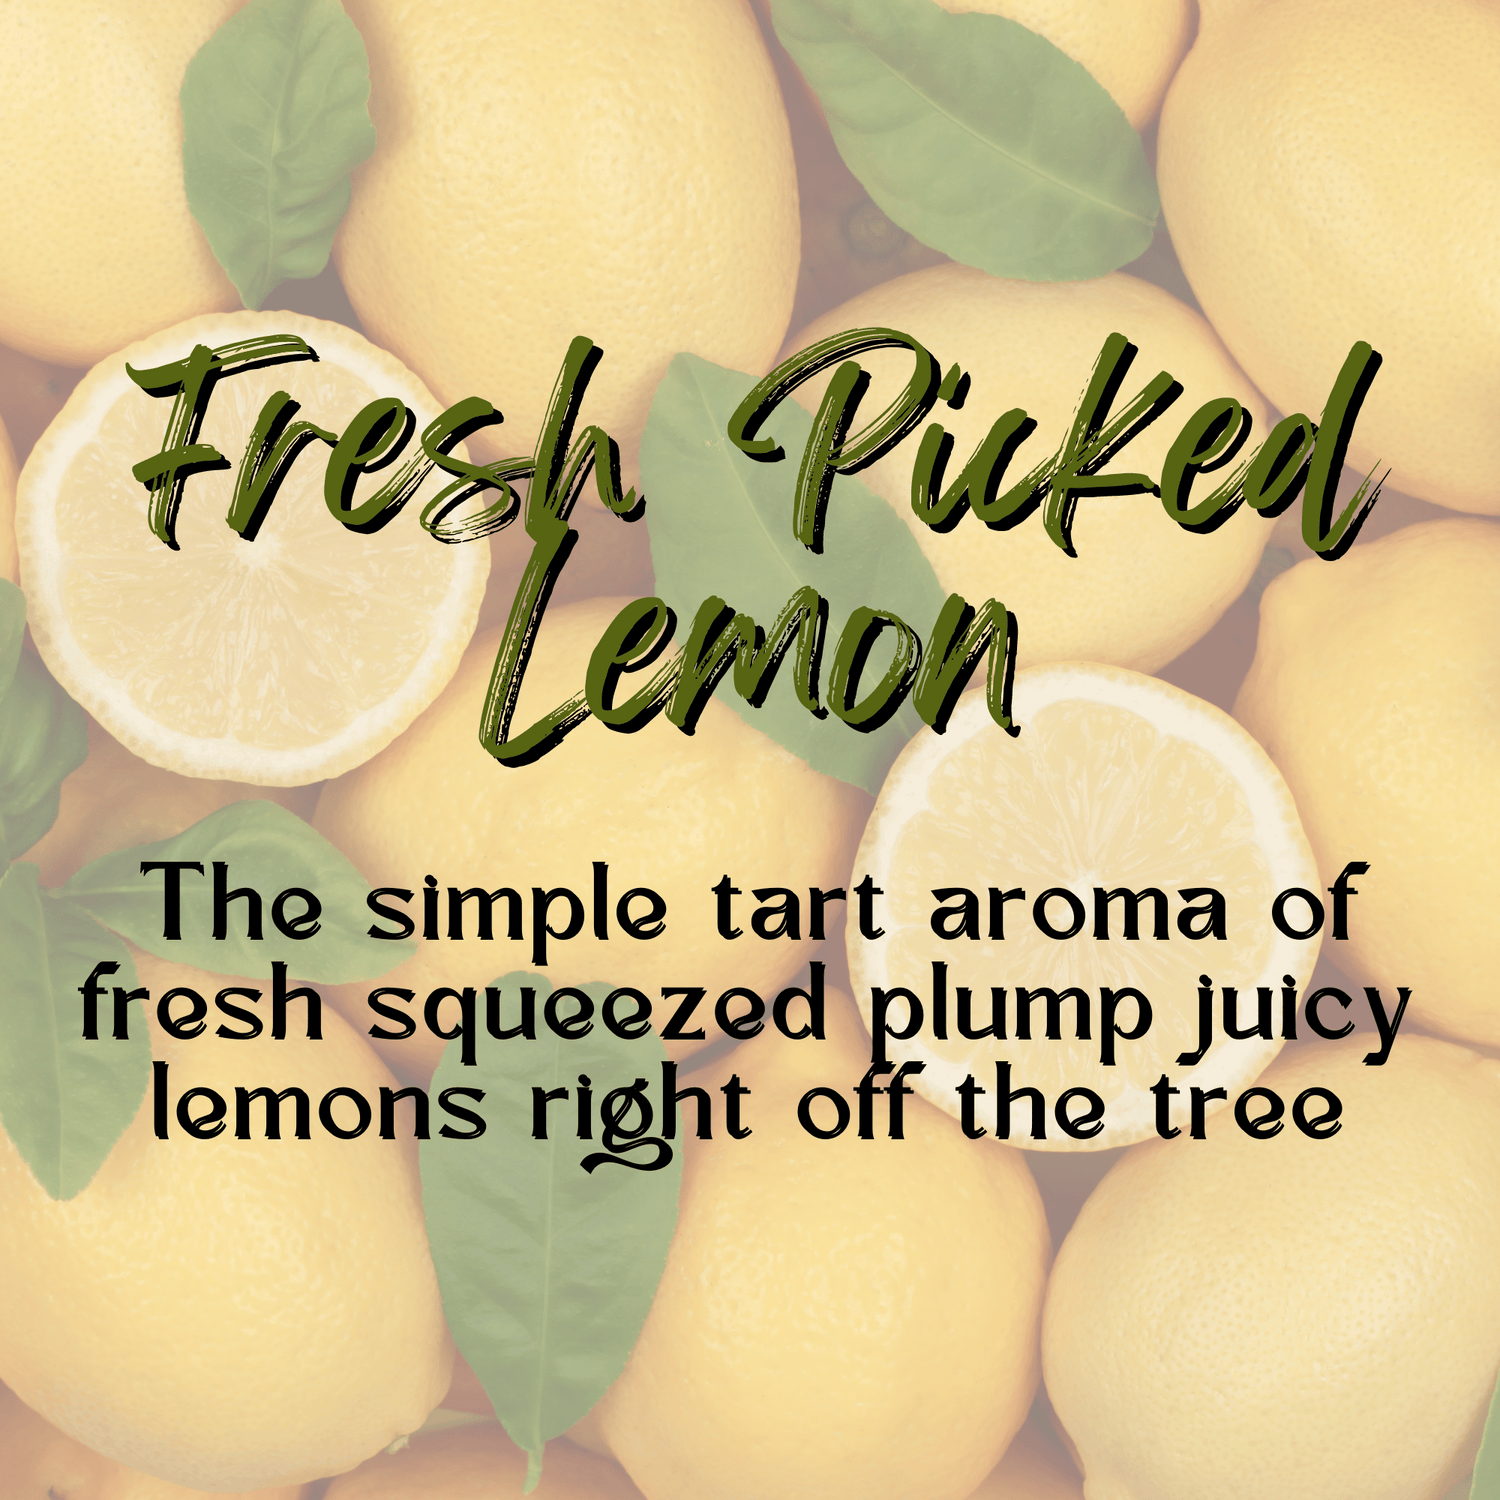 Fresh Picked Lemon